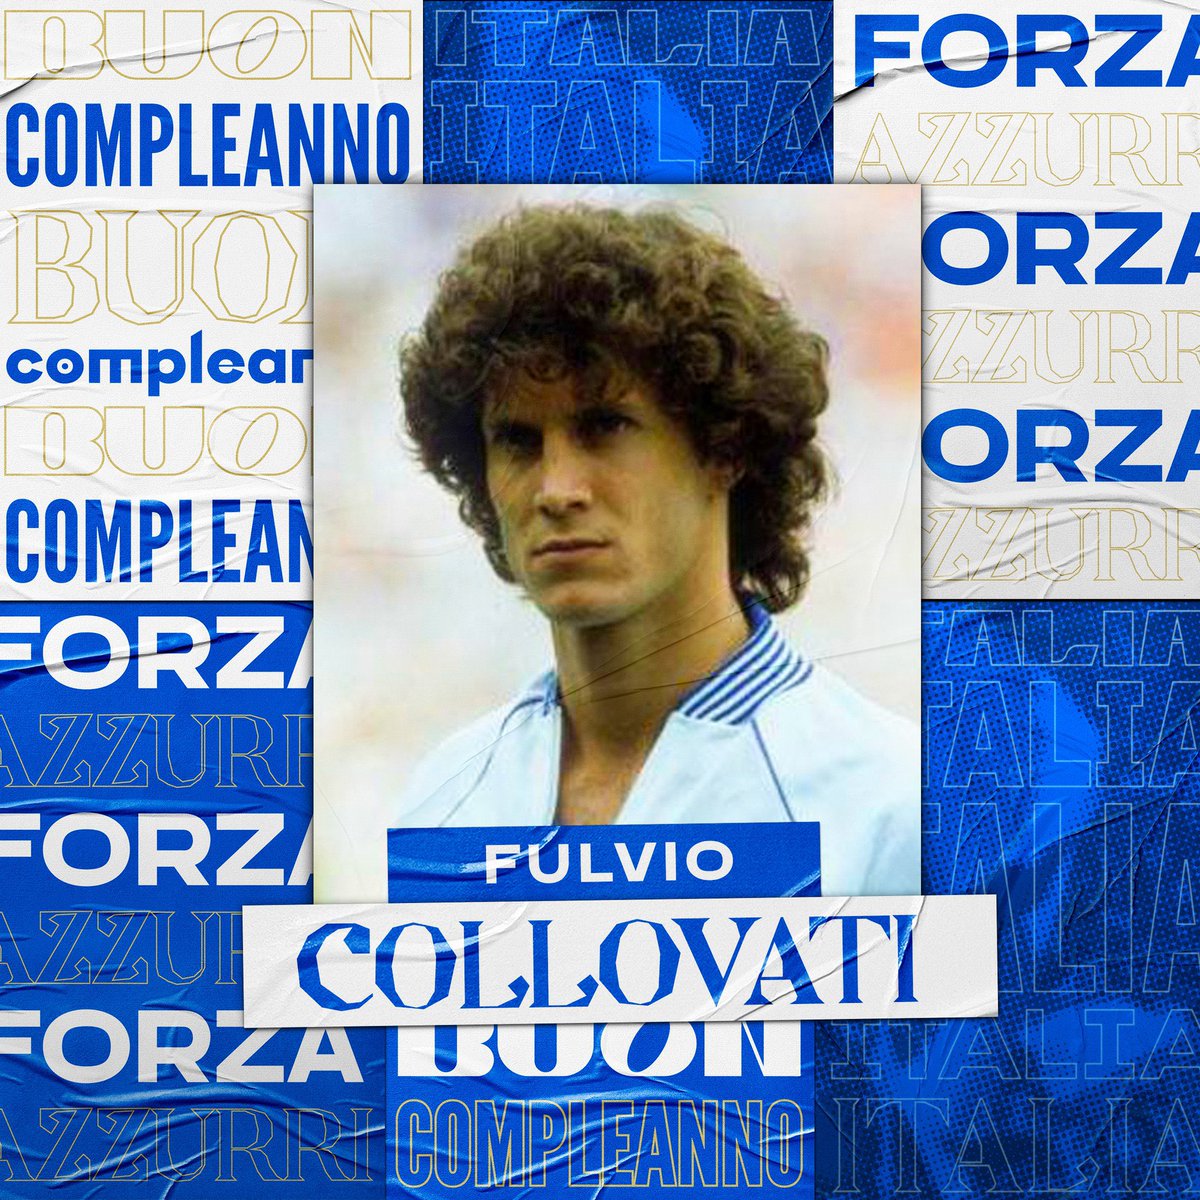 Happy birthday to World Cup winner, Fulvio Collovati 🎂 🎉 50 caps and 3 goals for the #Azzurri 💙 #VivoAzzurro